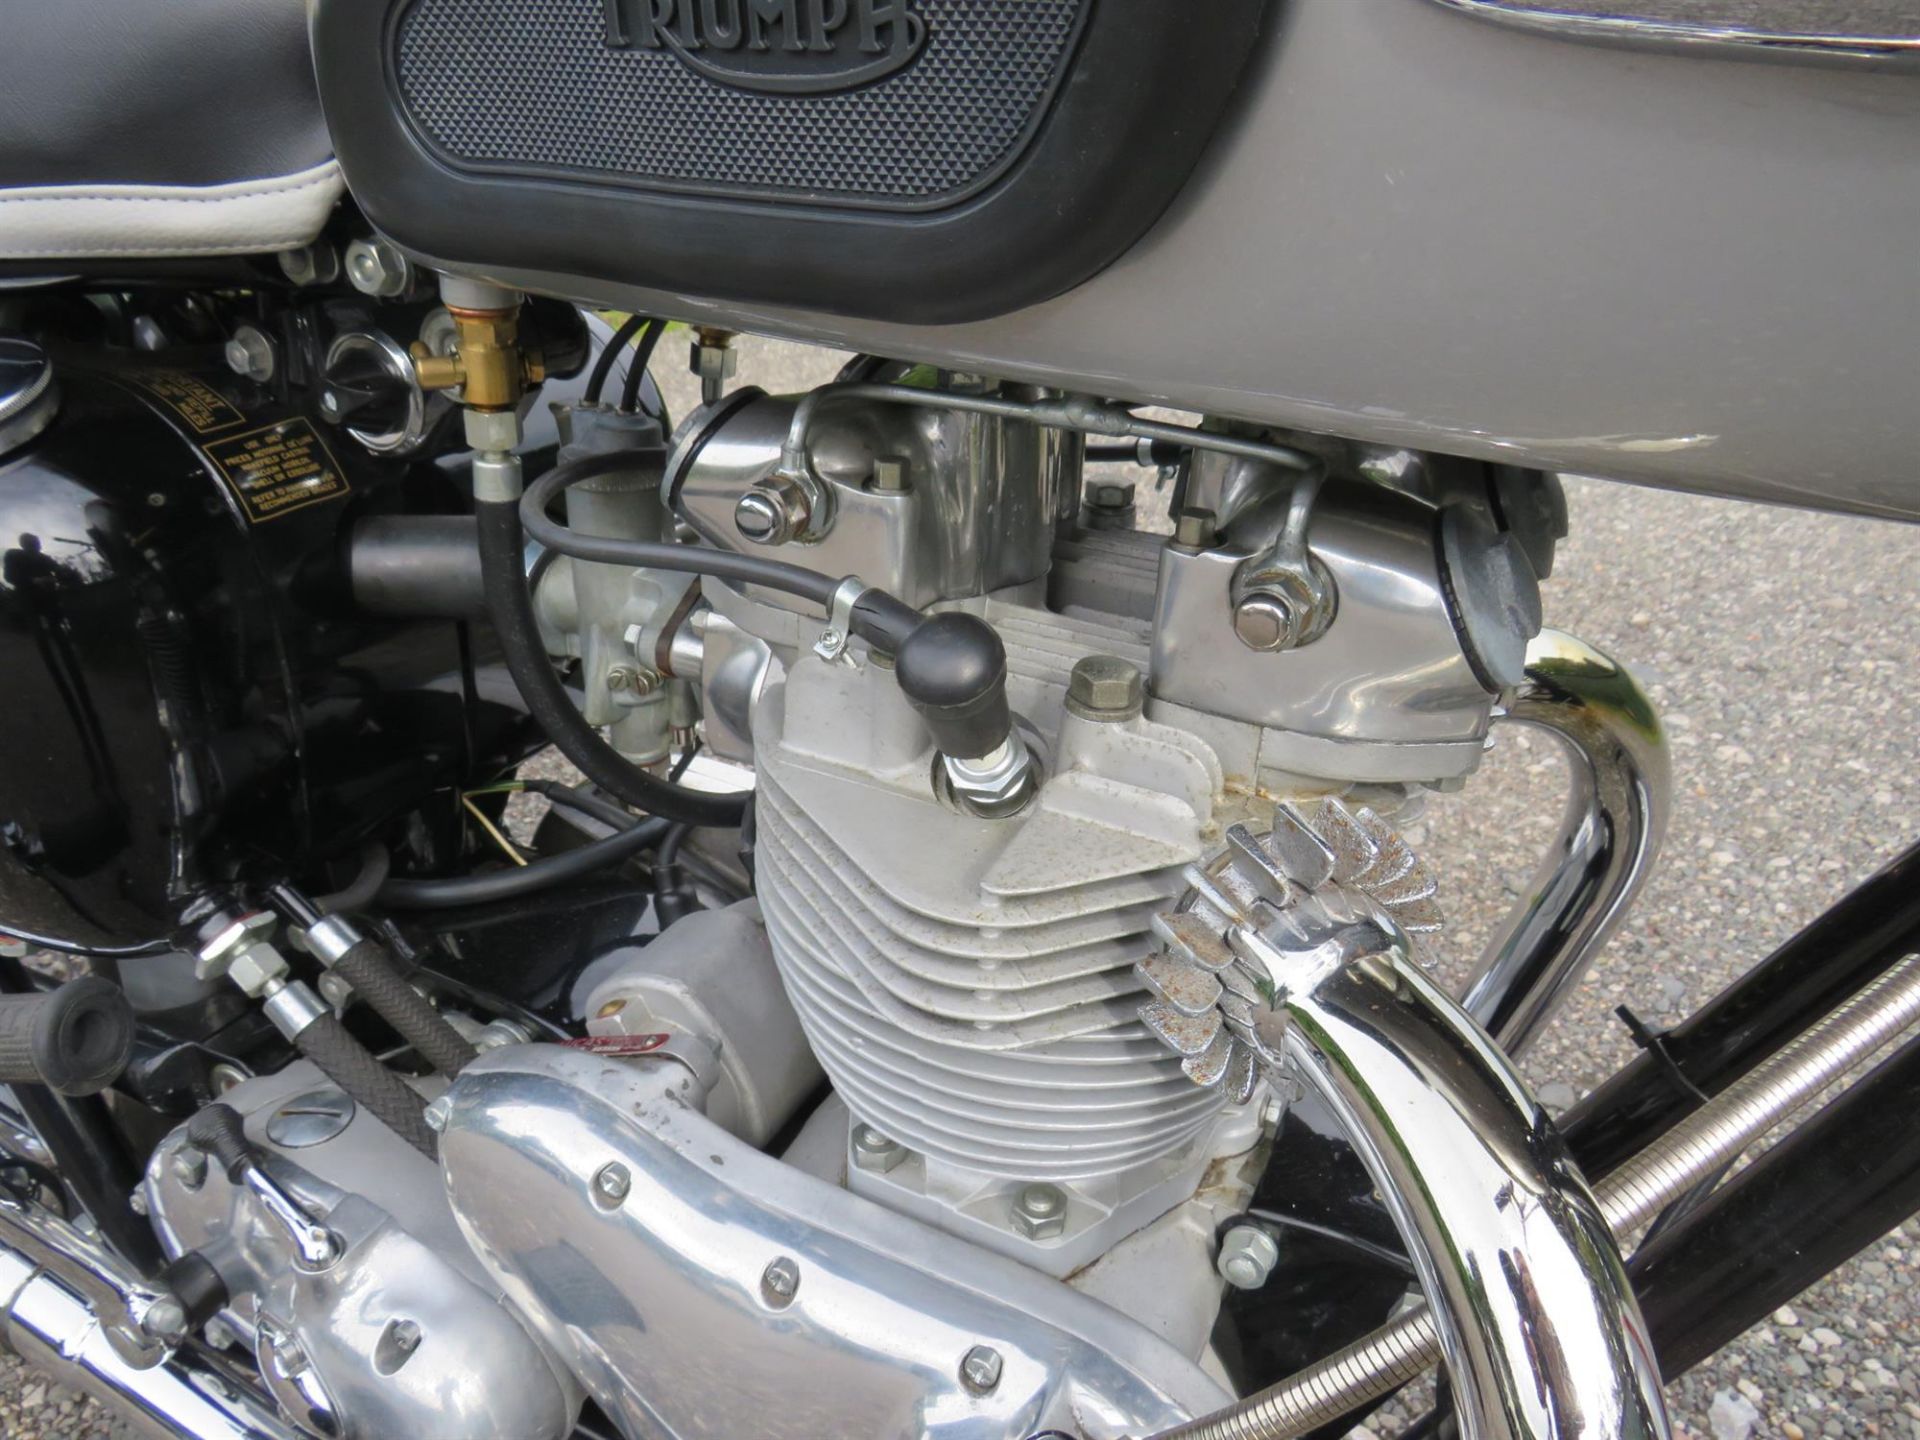 1962 Triumph TR6SS Trophy 649cc - Image 10 of 10